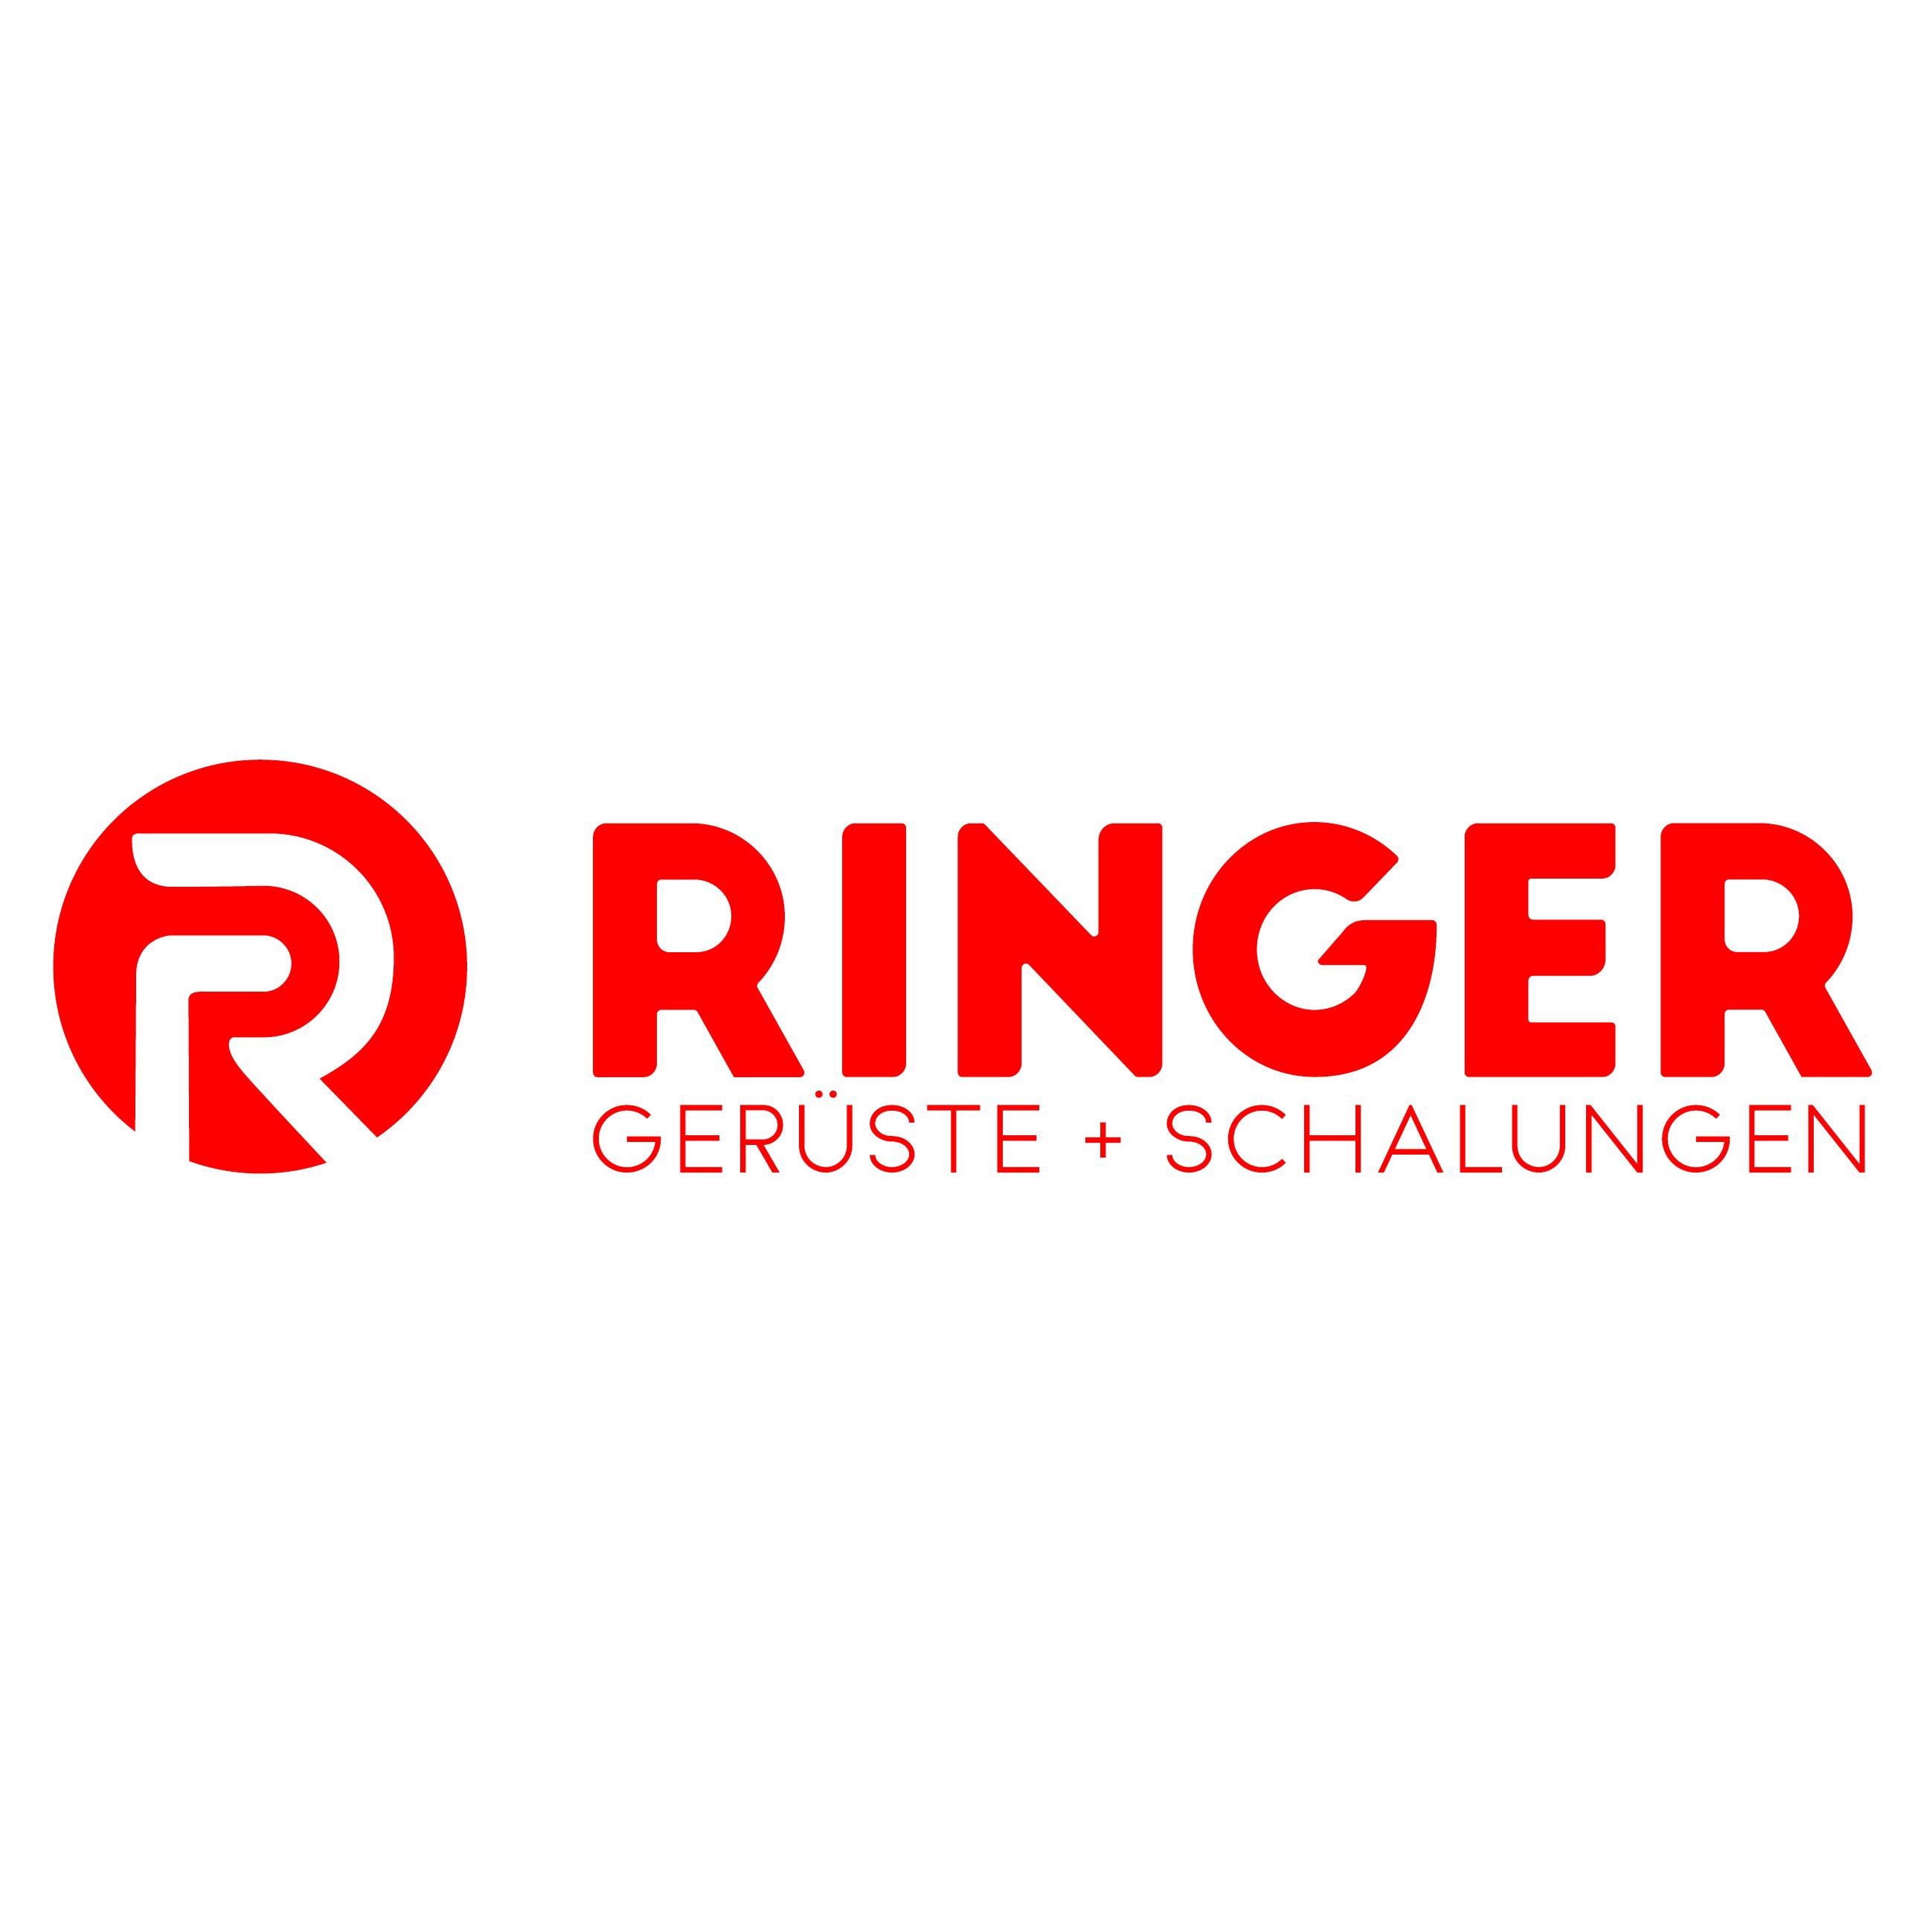 RINGER Gerüste + Schalungen